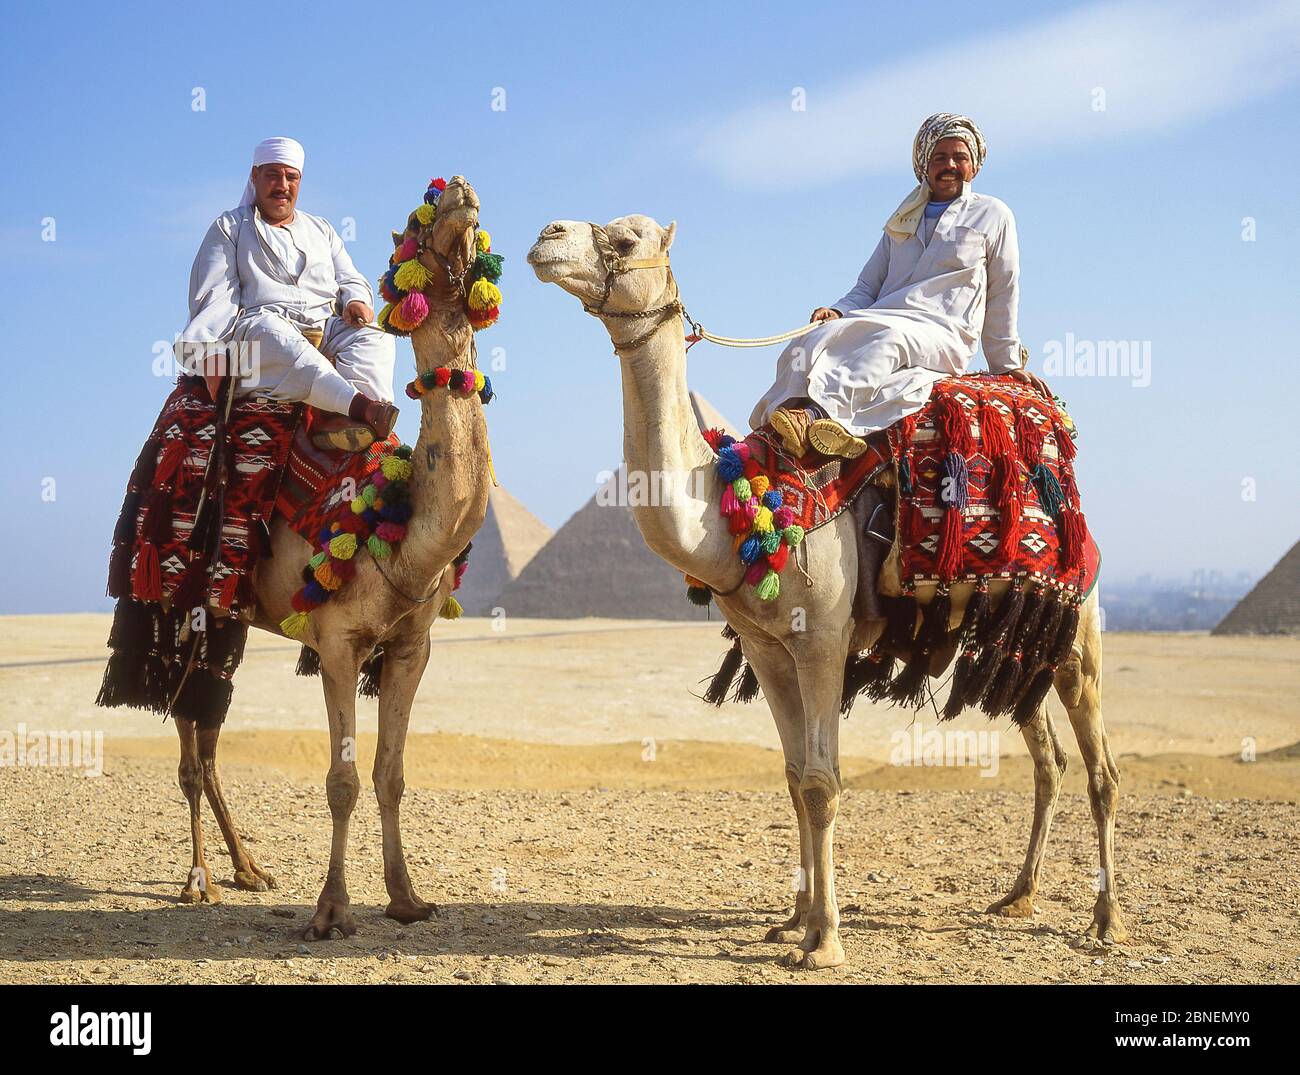 Les pilotes de chameaux sur les chameaux, les grandes pyramides de Gizeh, Gizeh, Govergate de Gizeh, République d'Égypte Banque D'Images